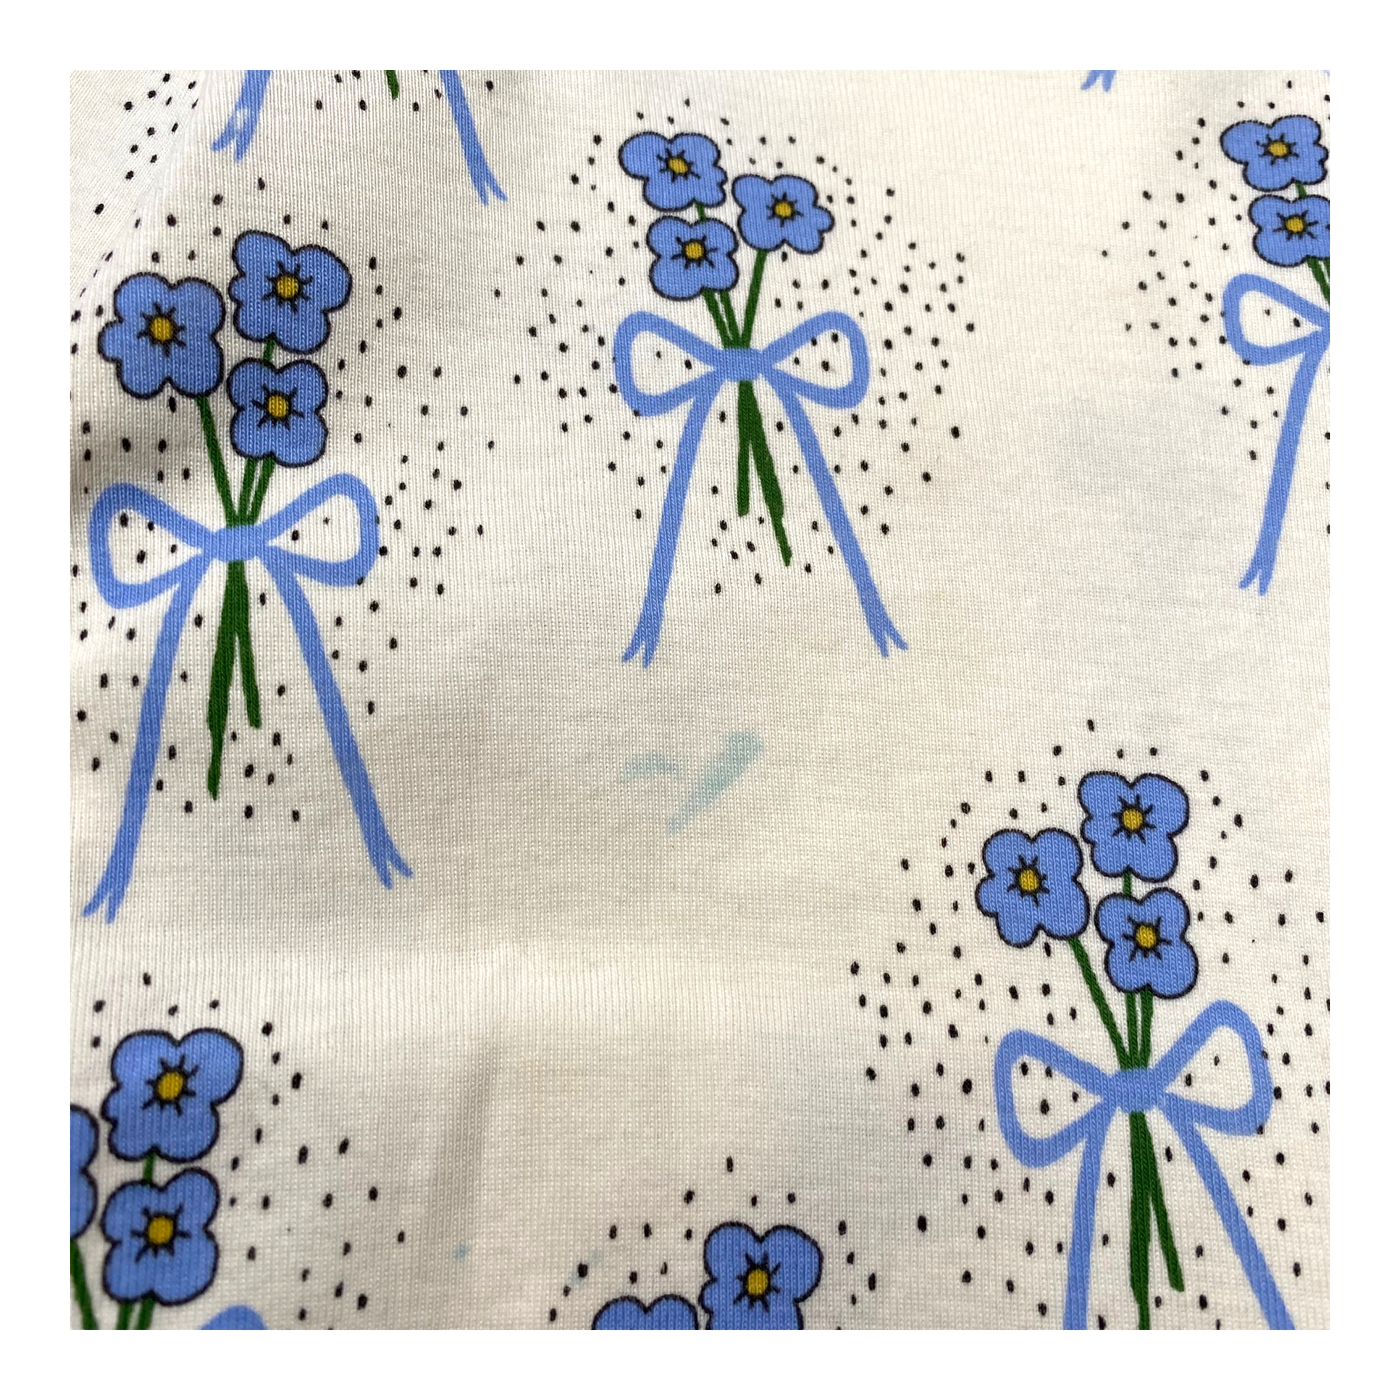 Mini Rodini shirt, flowers | 116/122cm